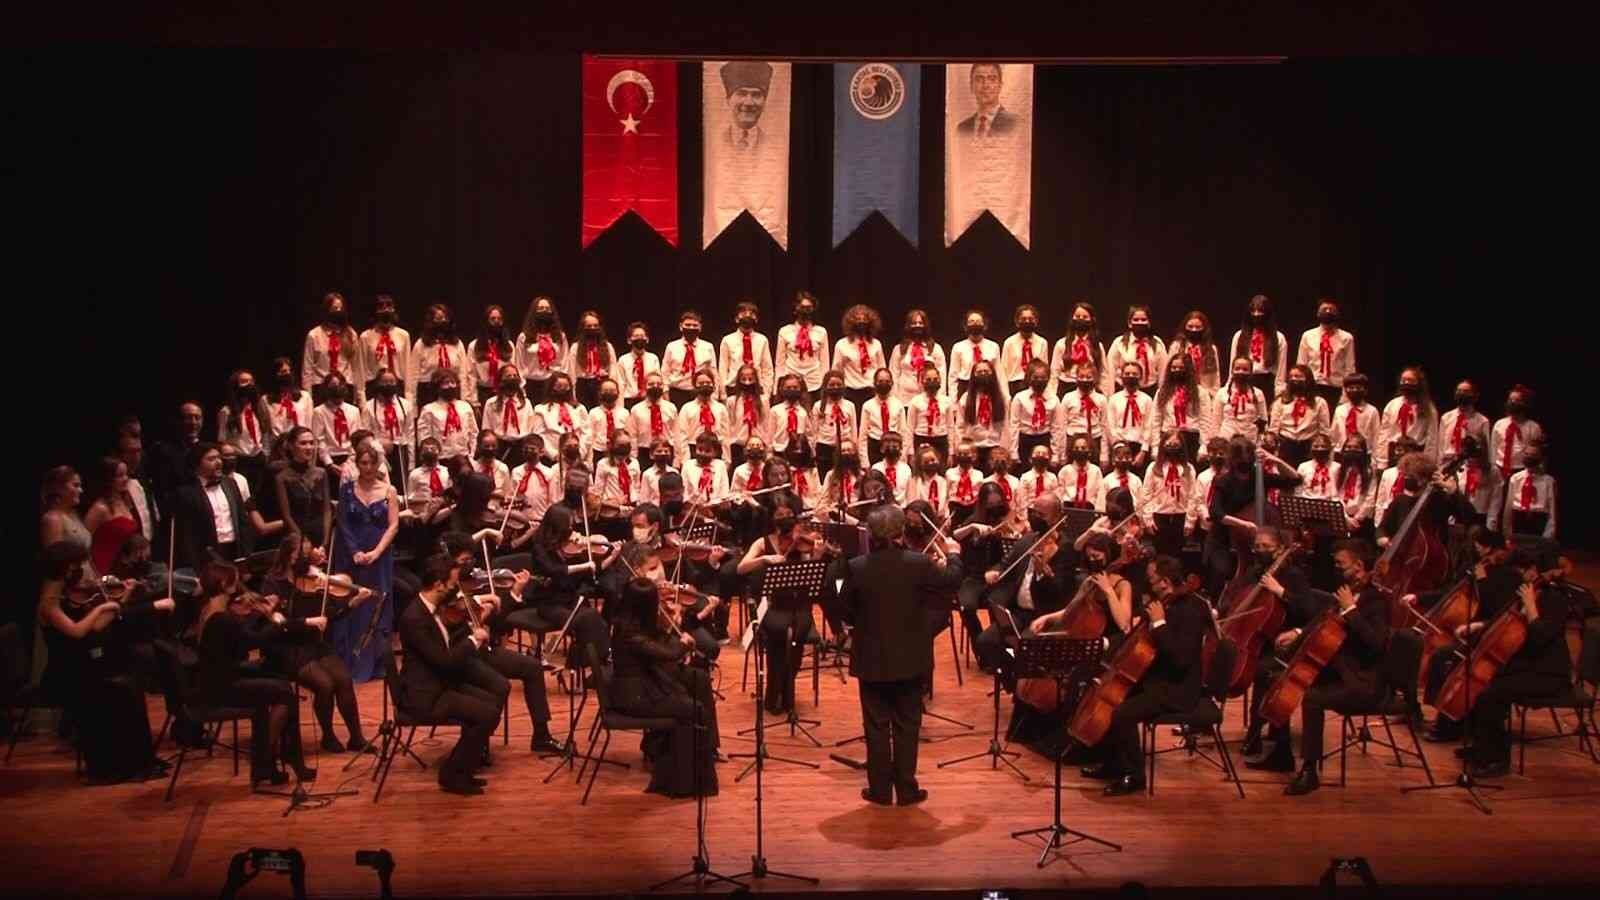 Kartal’da yeni yıl coşkusu, Gençlik Senfoni Orkestrası konseriyle taçlandırıldı #istanbul